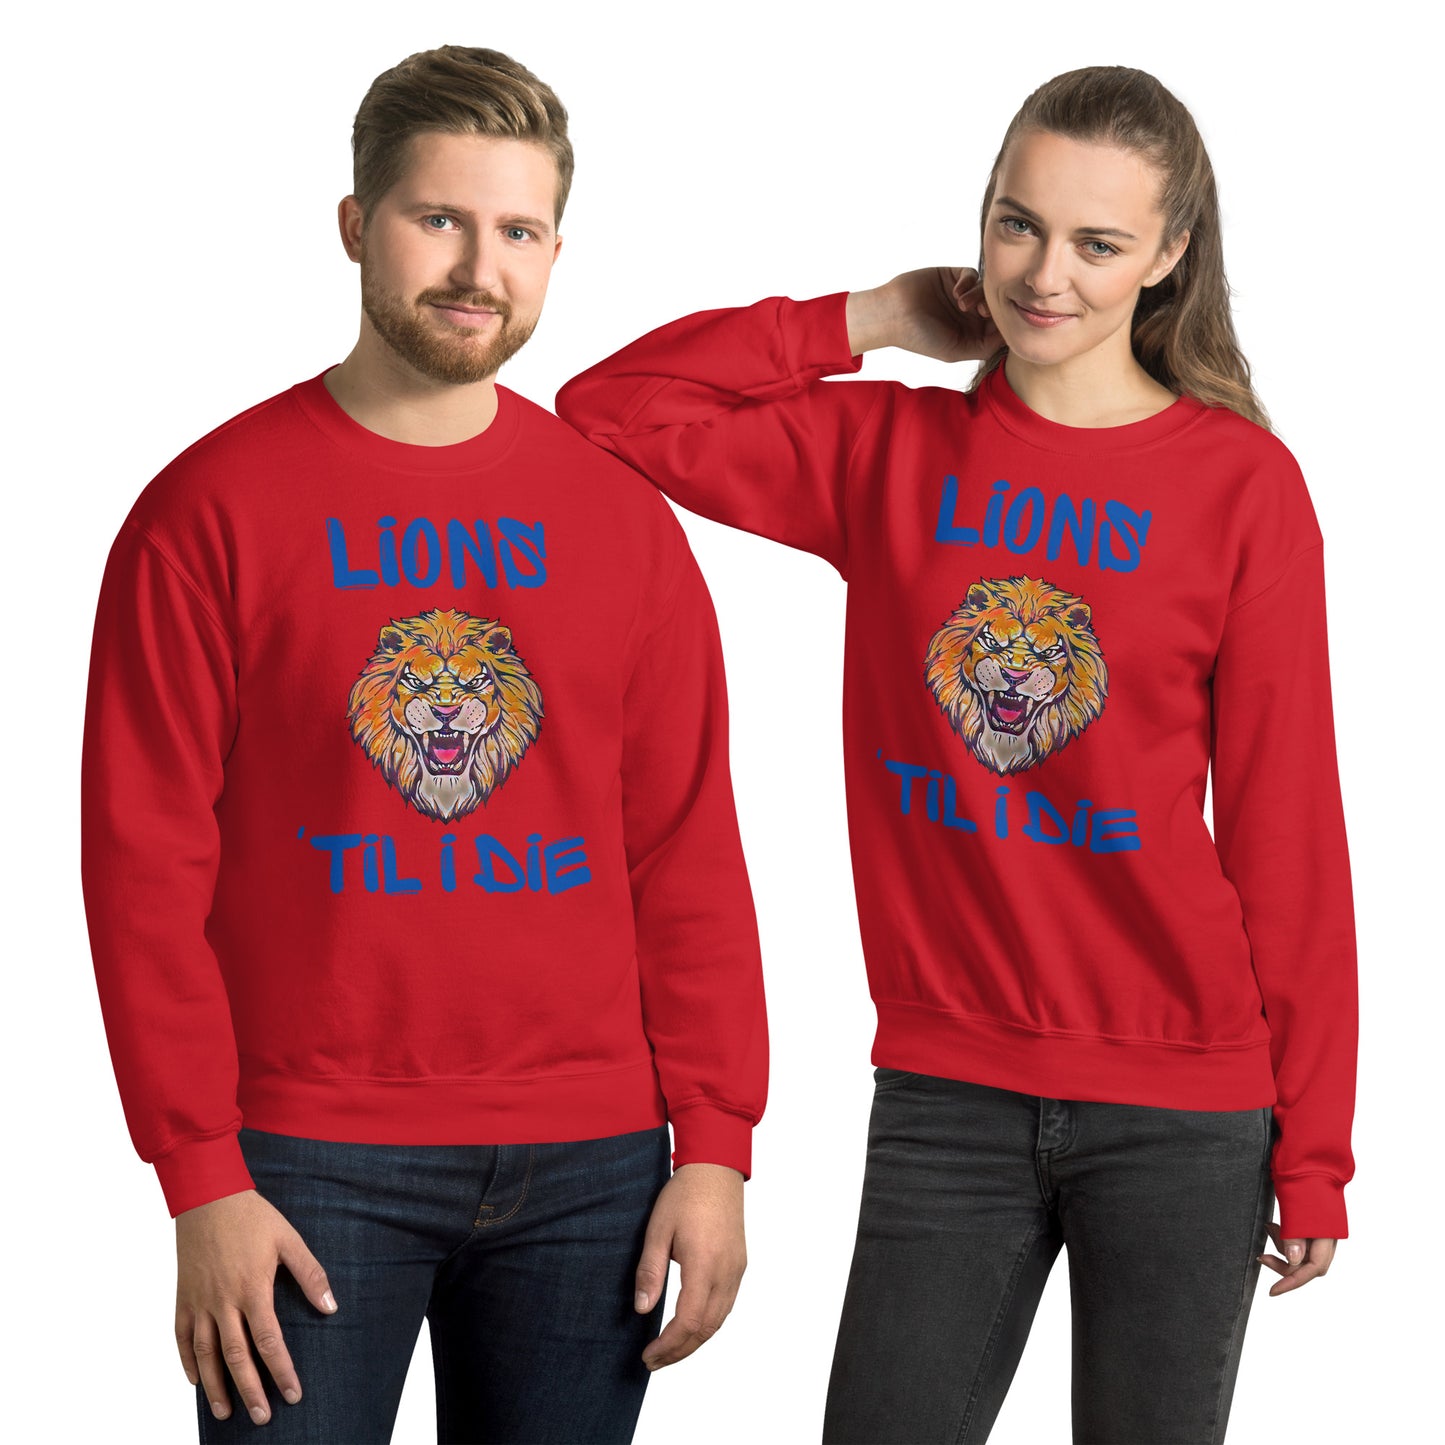 Lions 'Til I Die Sweatshirt